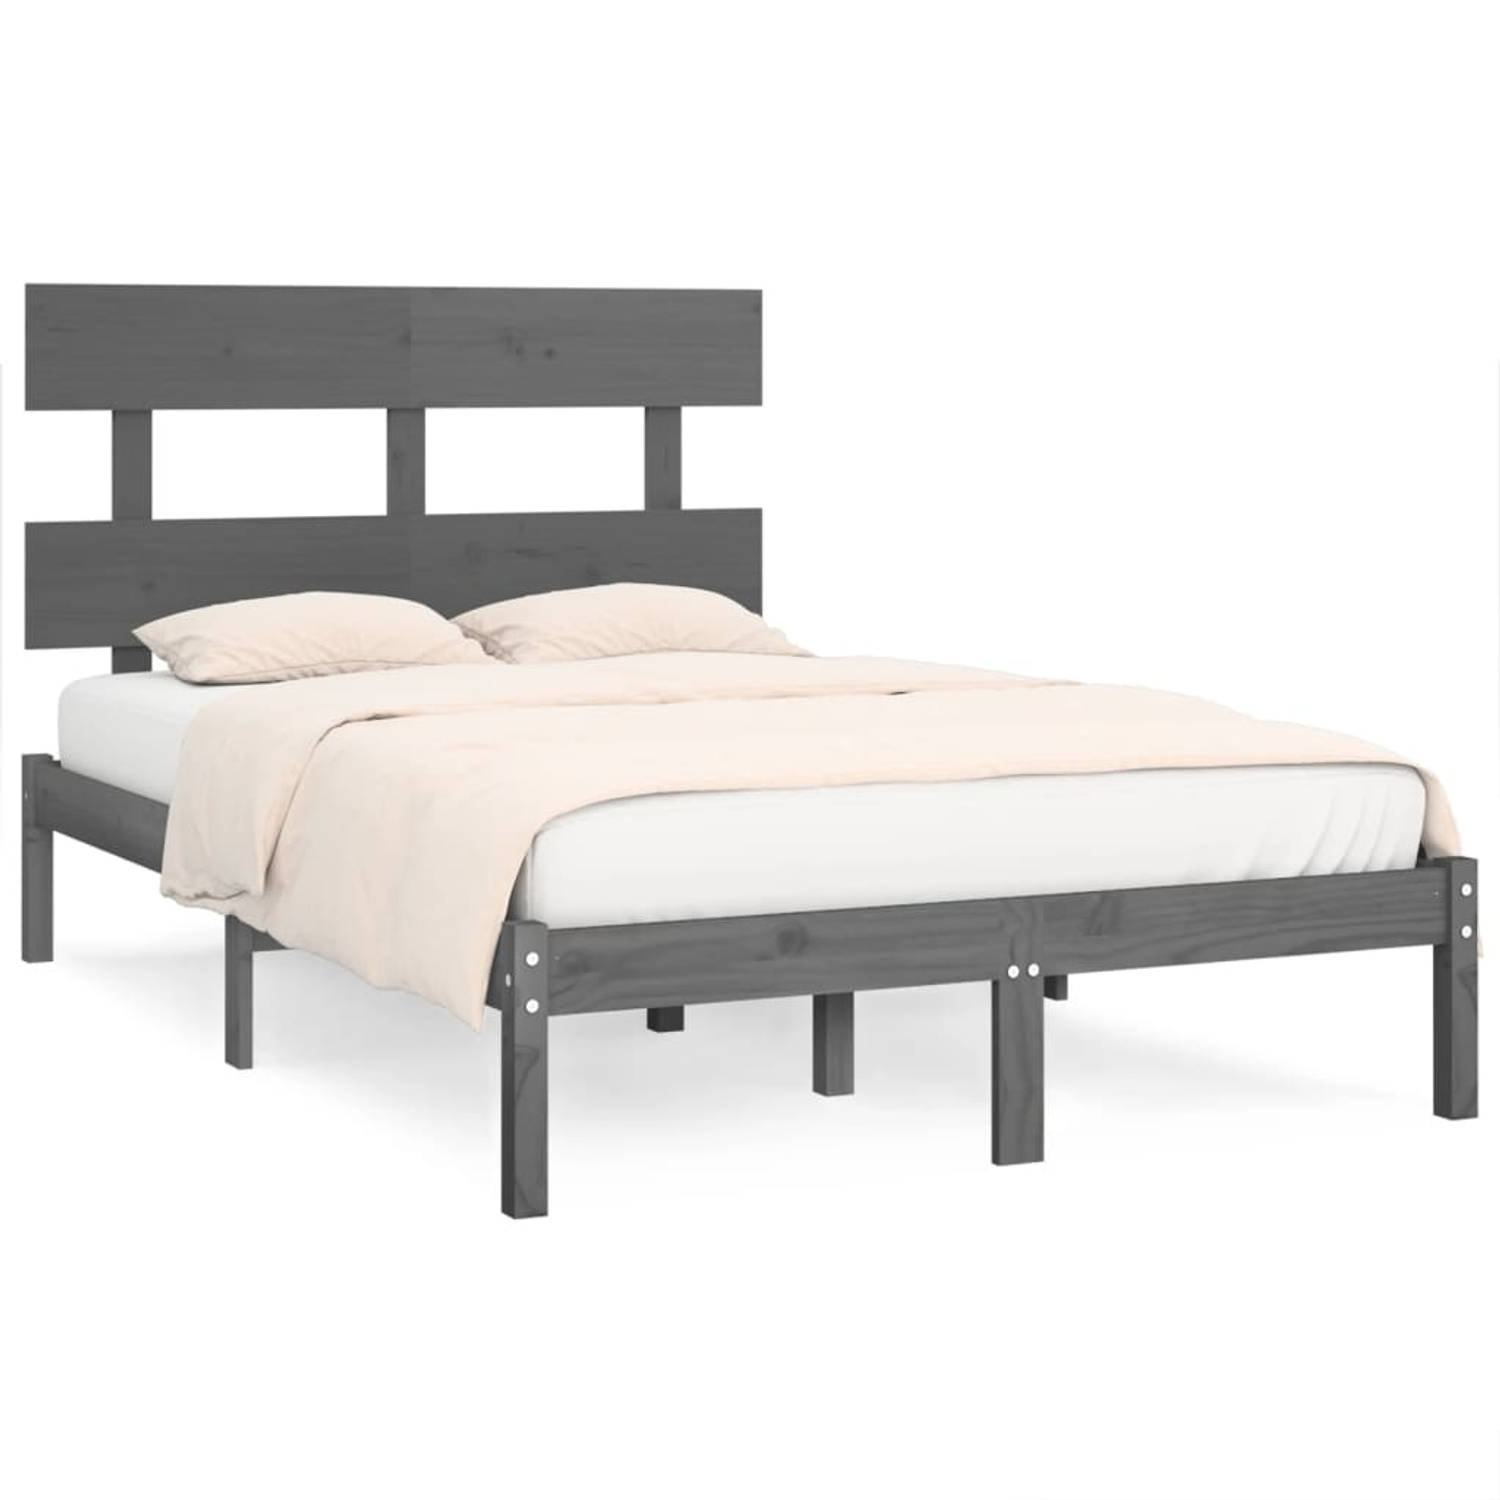 The Living Store Bedframe massief hout grijs 135x190 cm 4FT6 Double - Bedframe - Bedframes - Tweepersoonsbed - Bed - Bedombouw - Dubbel Bed - Frame - Bed Frame - Ledikant - Bedfram